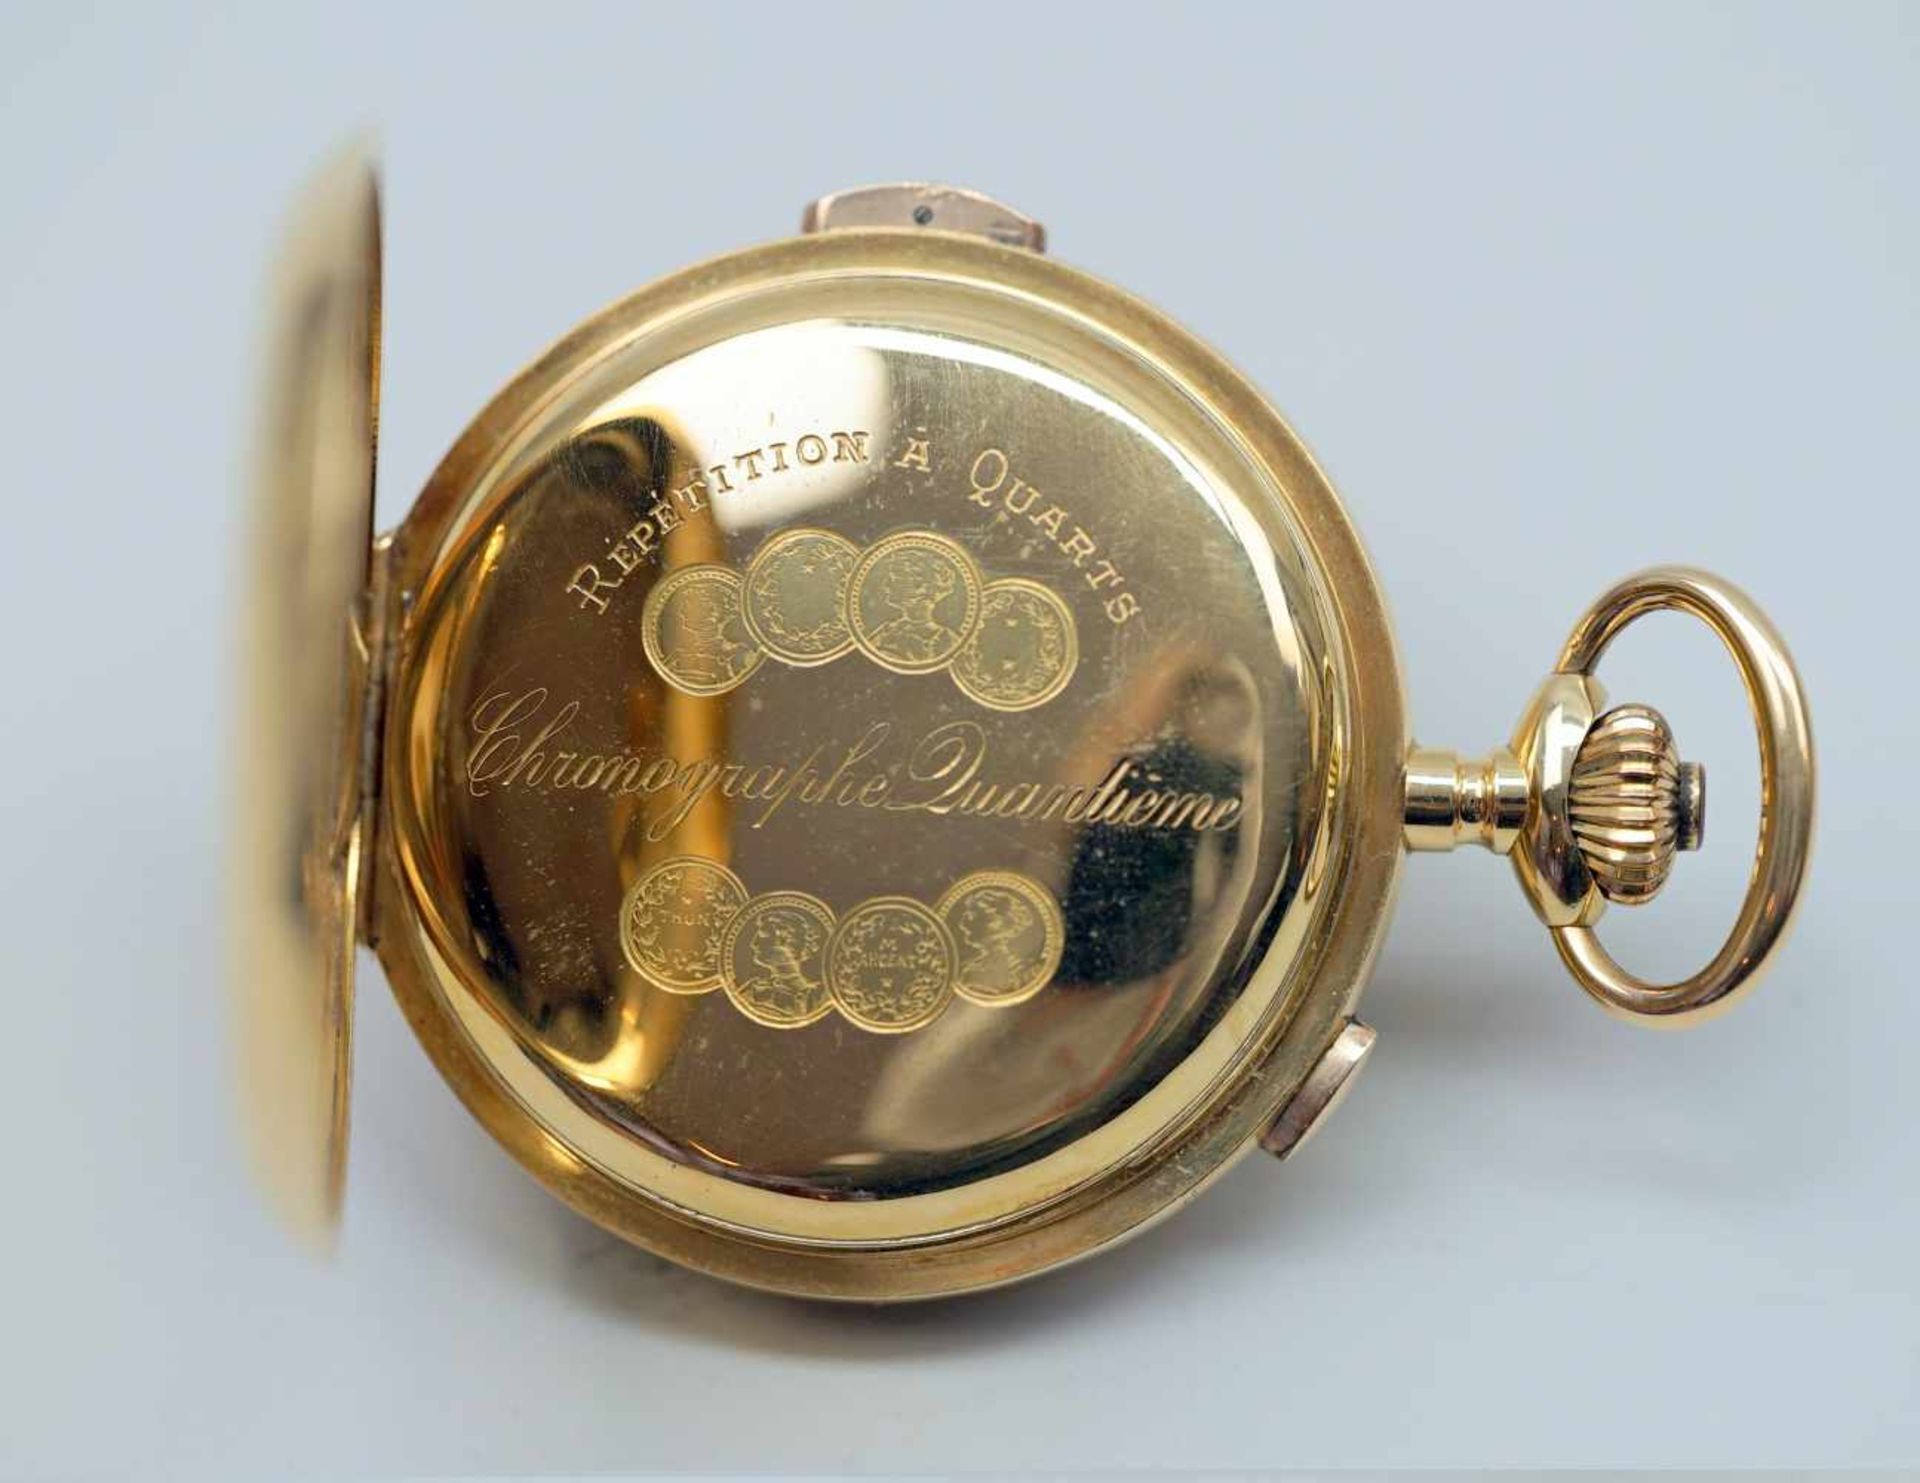 Große TaschenuhrGold. Große Taschenuhr mit drei Deckeln, Gold. Mit Mondphase, Tag sowie Datum und - Bild 3 aus 4